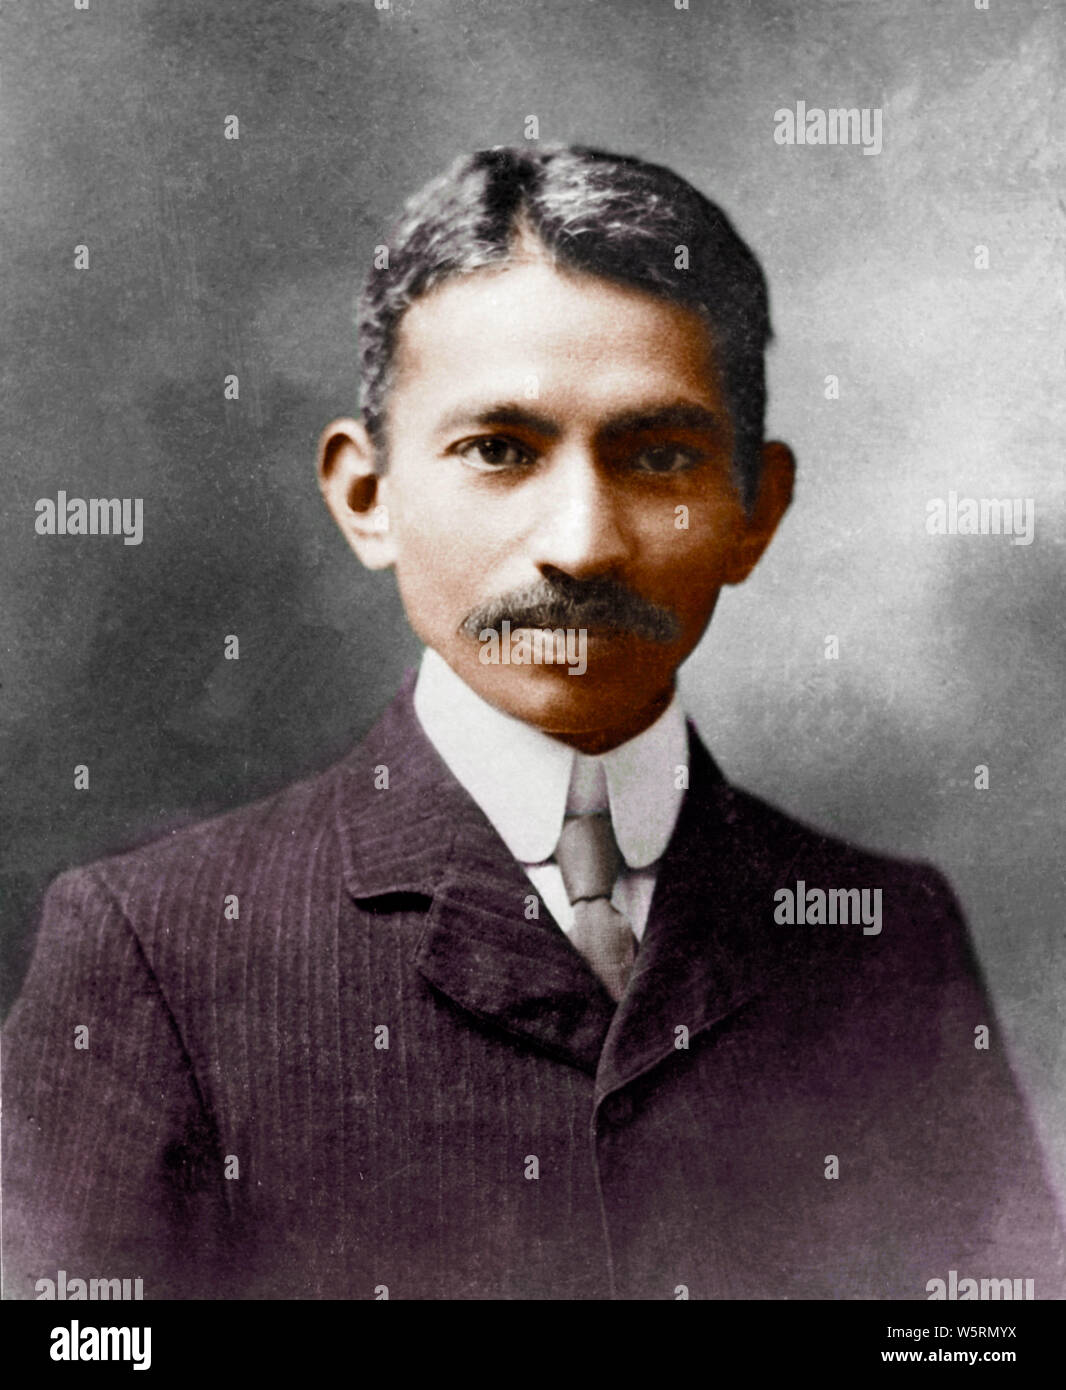 Vieille photo vintage de Mahatma Gandhi à Londres Angleterre Royaume-Uni 1909 Banque D'Images